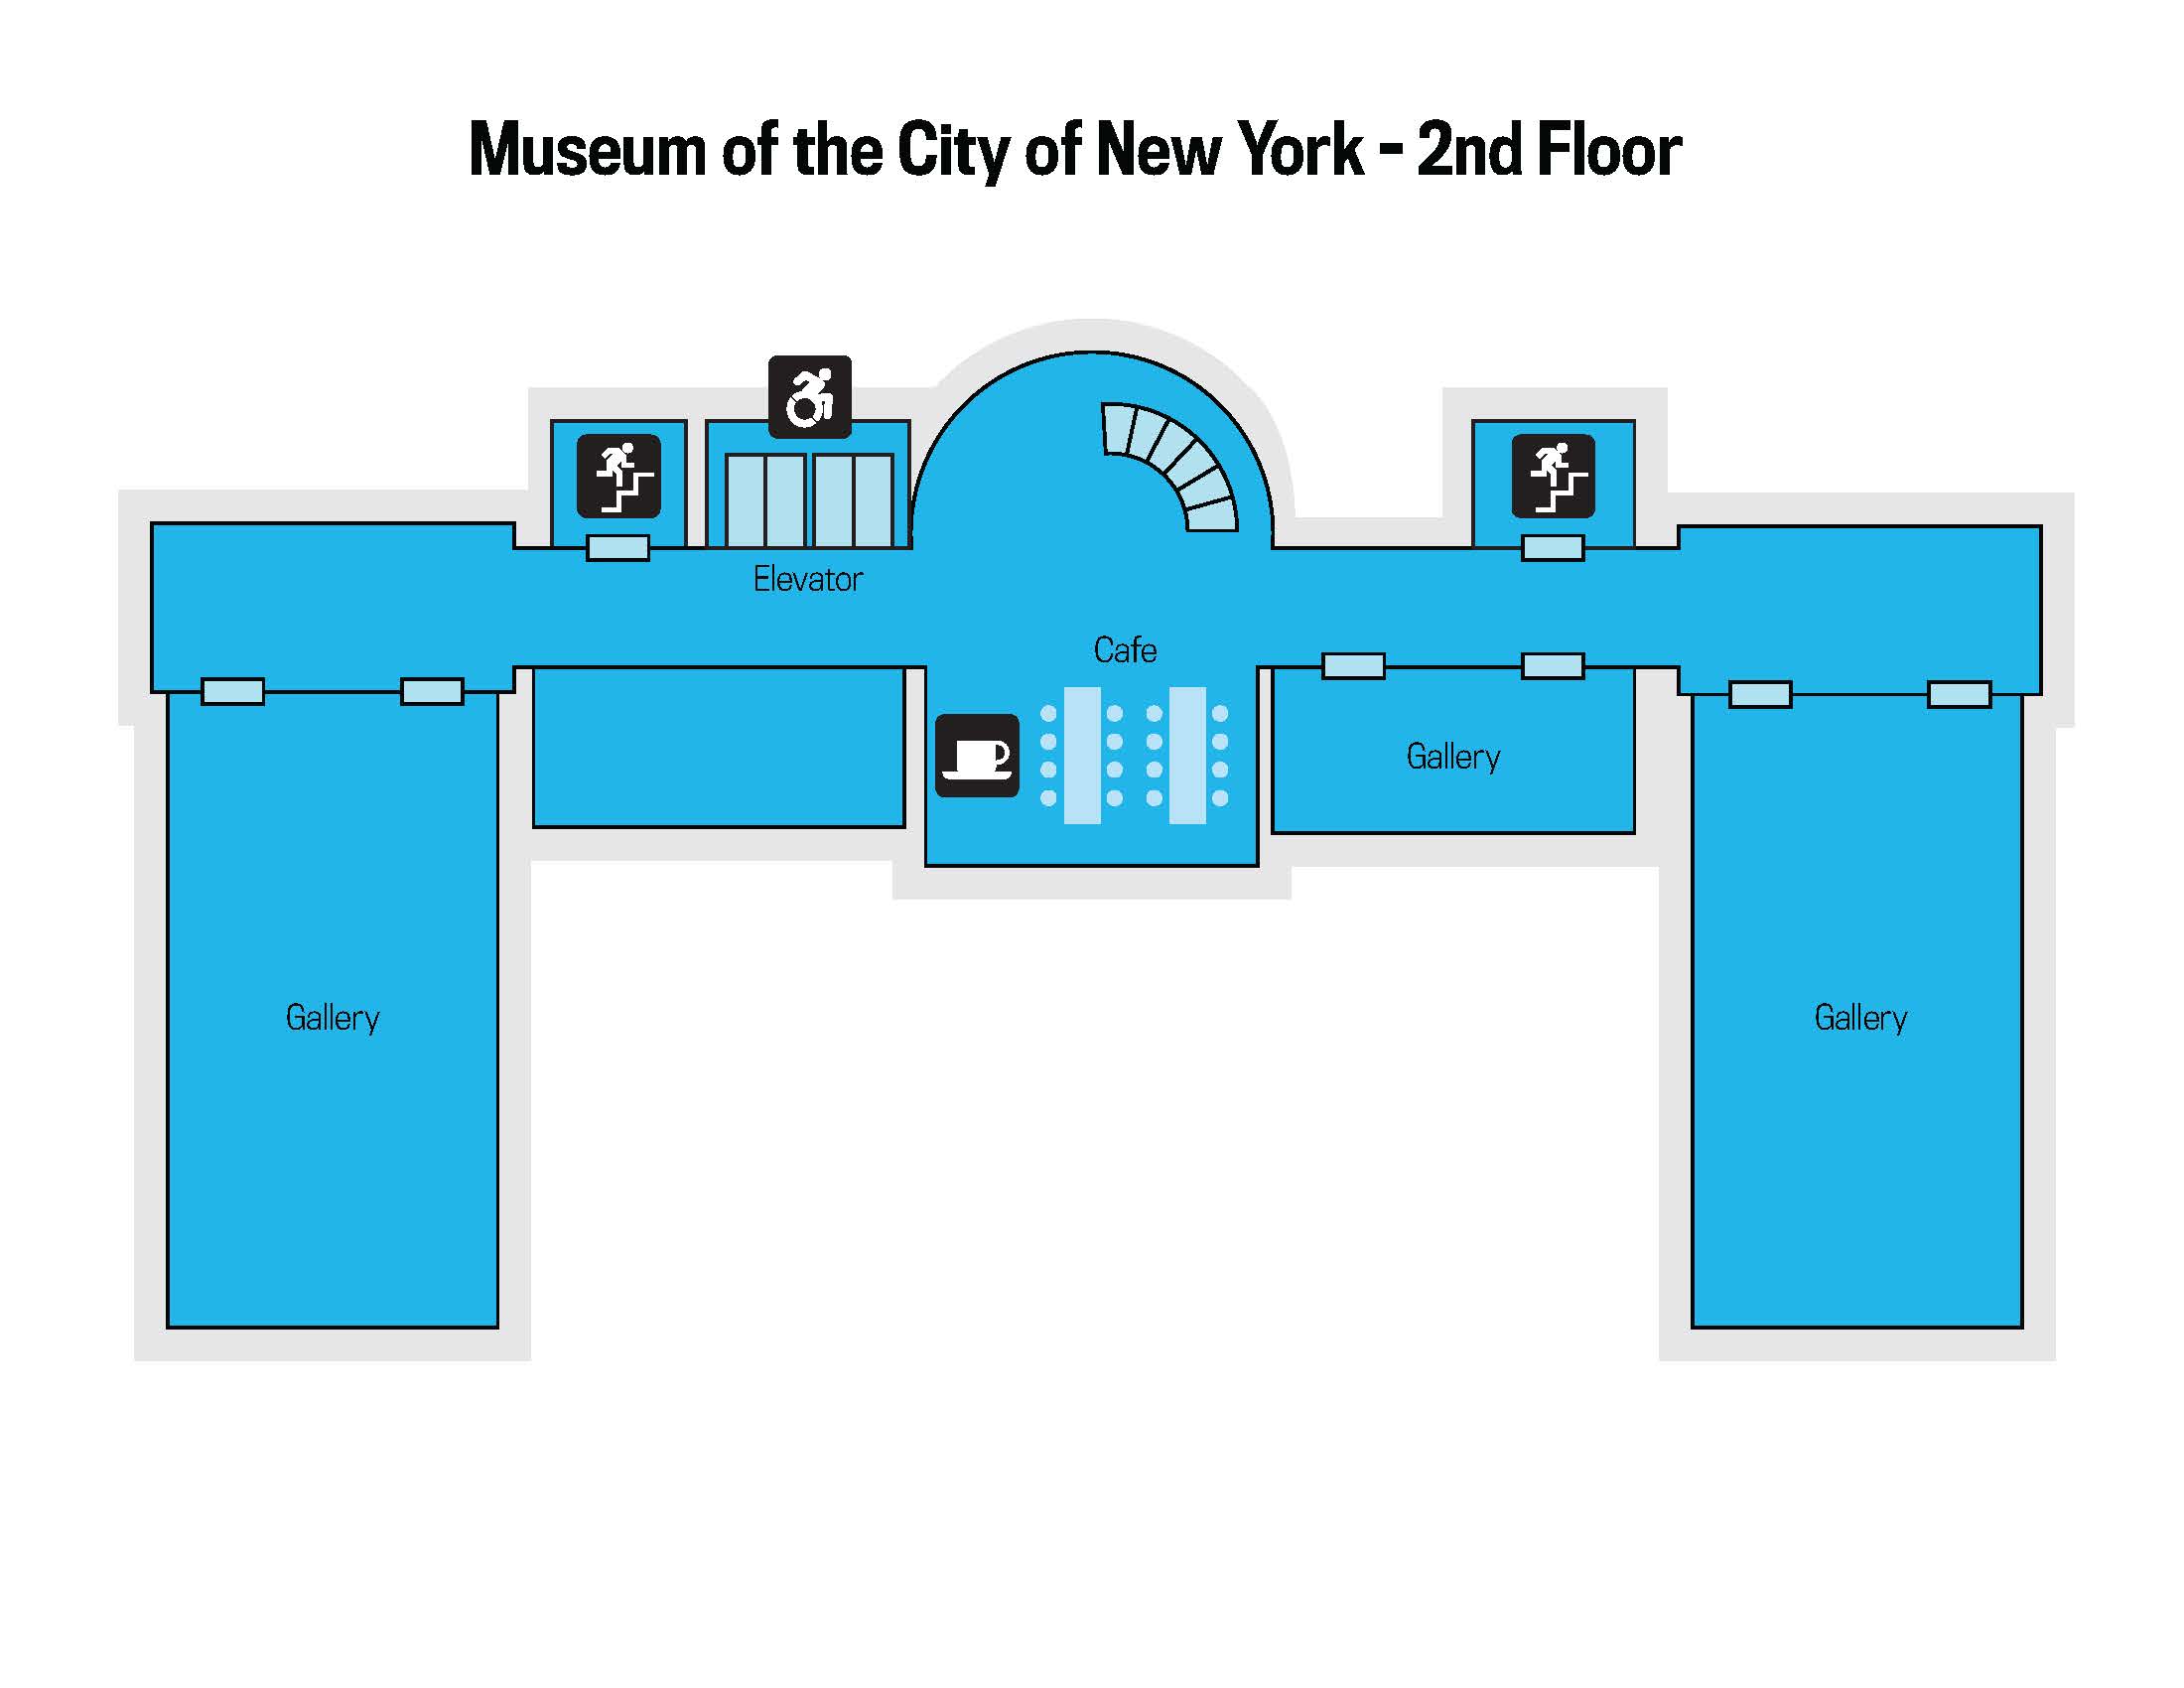 A floor plan of the museum's second floor.